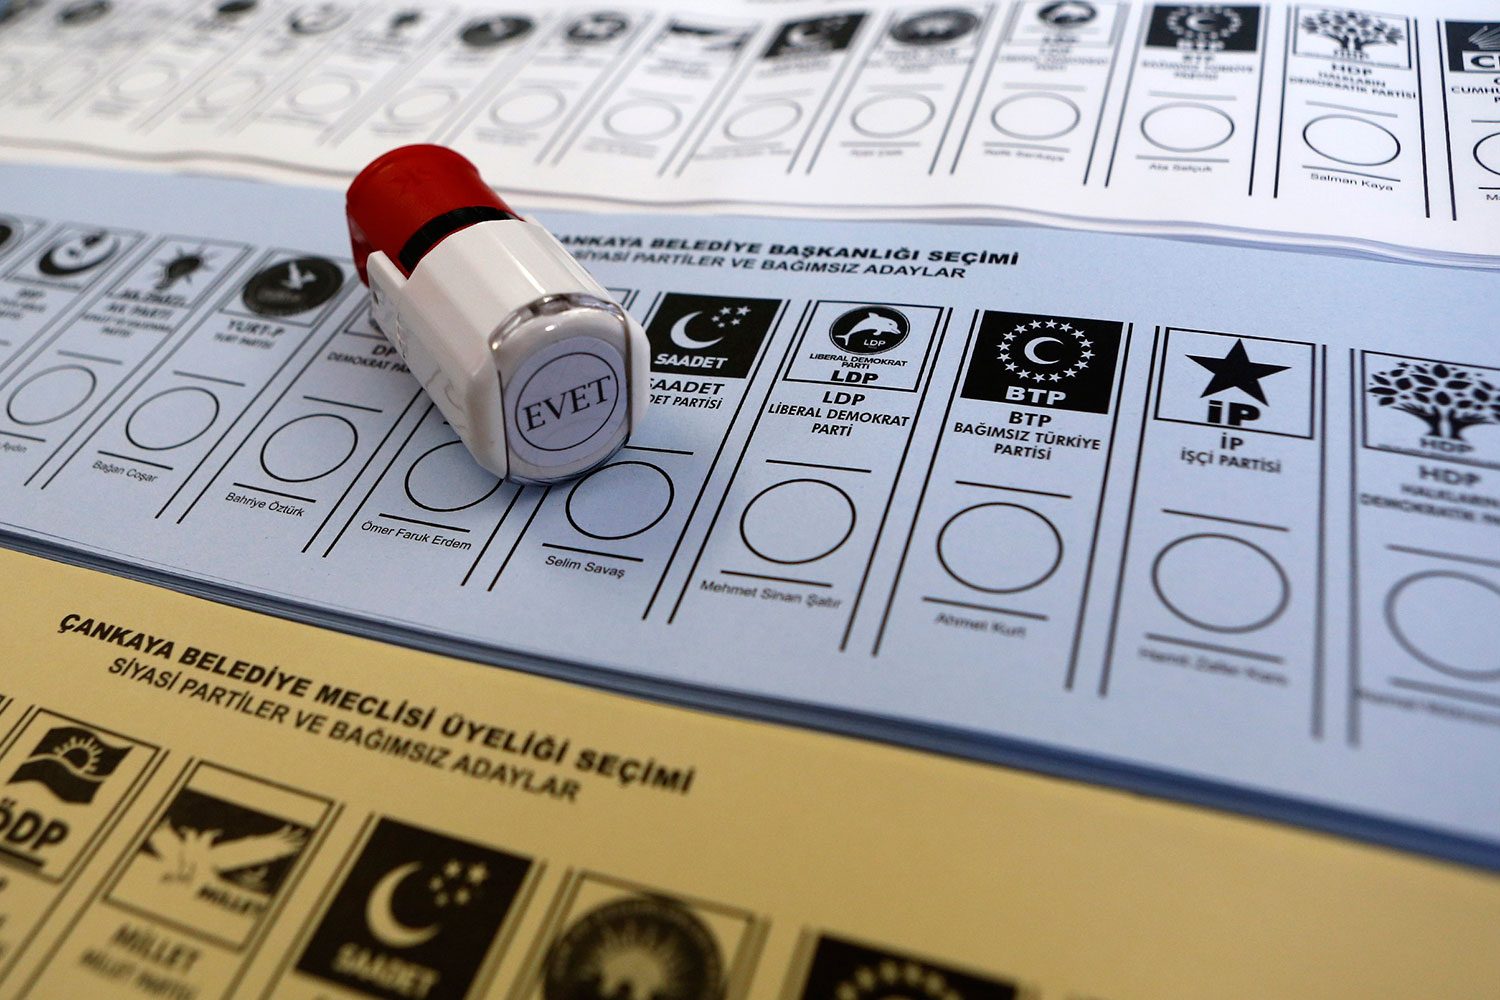 Papeletas marcadas a favor de la oposición aparecen en bolsas de basura de cinco escuelas turcas